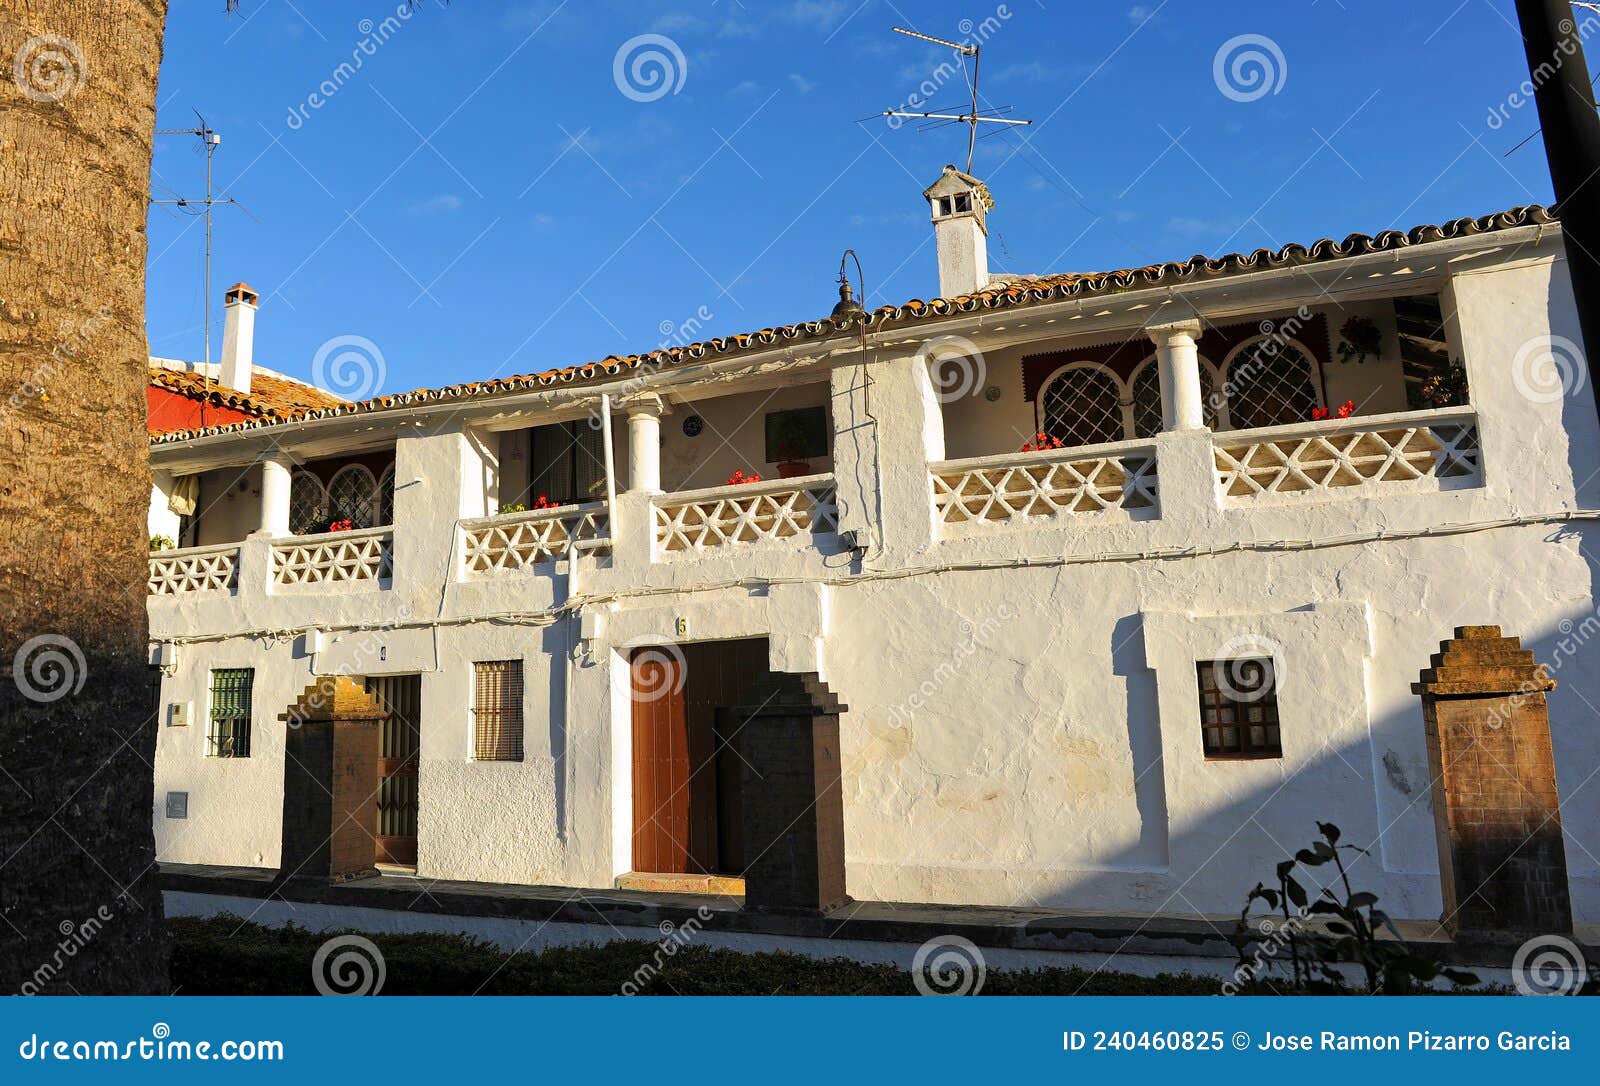 casa encalada en cazalla de la sierra, provincia de sevilla, espaÃÂ±a